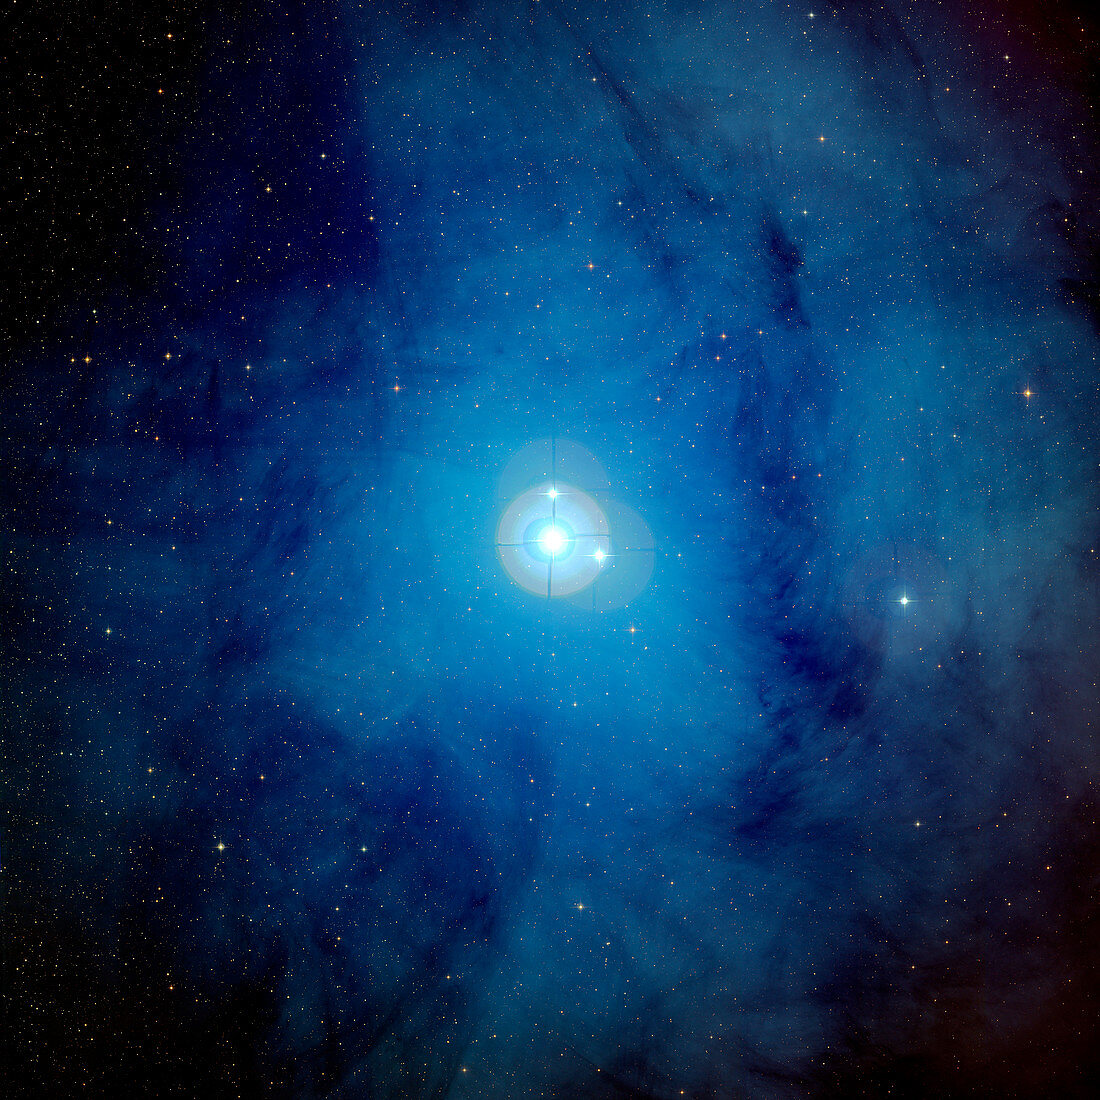 Reflection nebula IC 4604,optical image